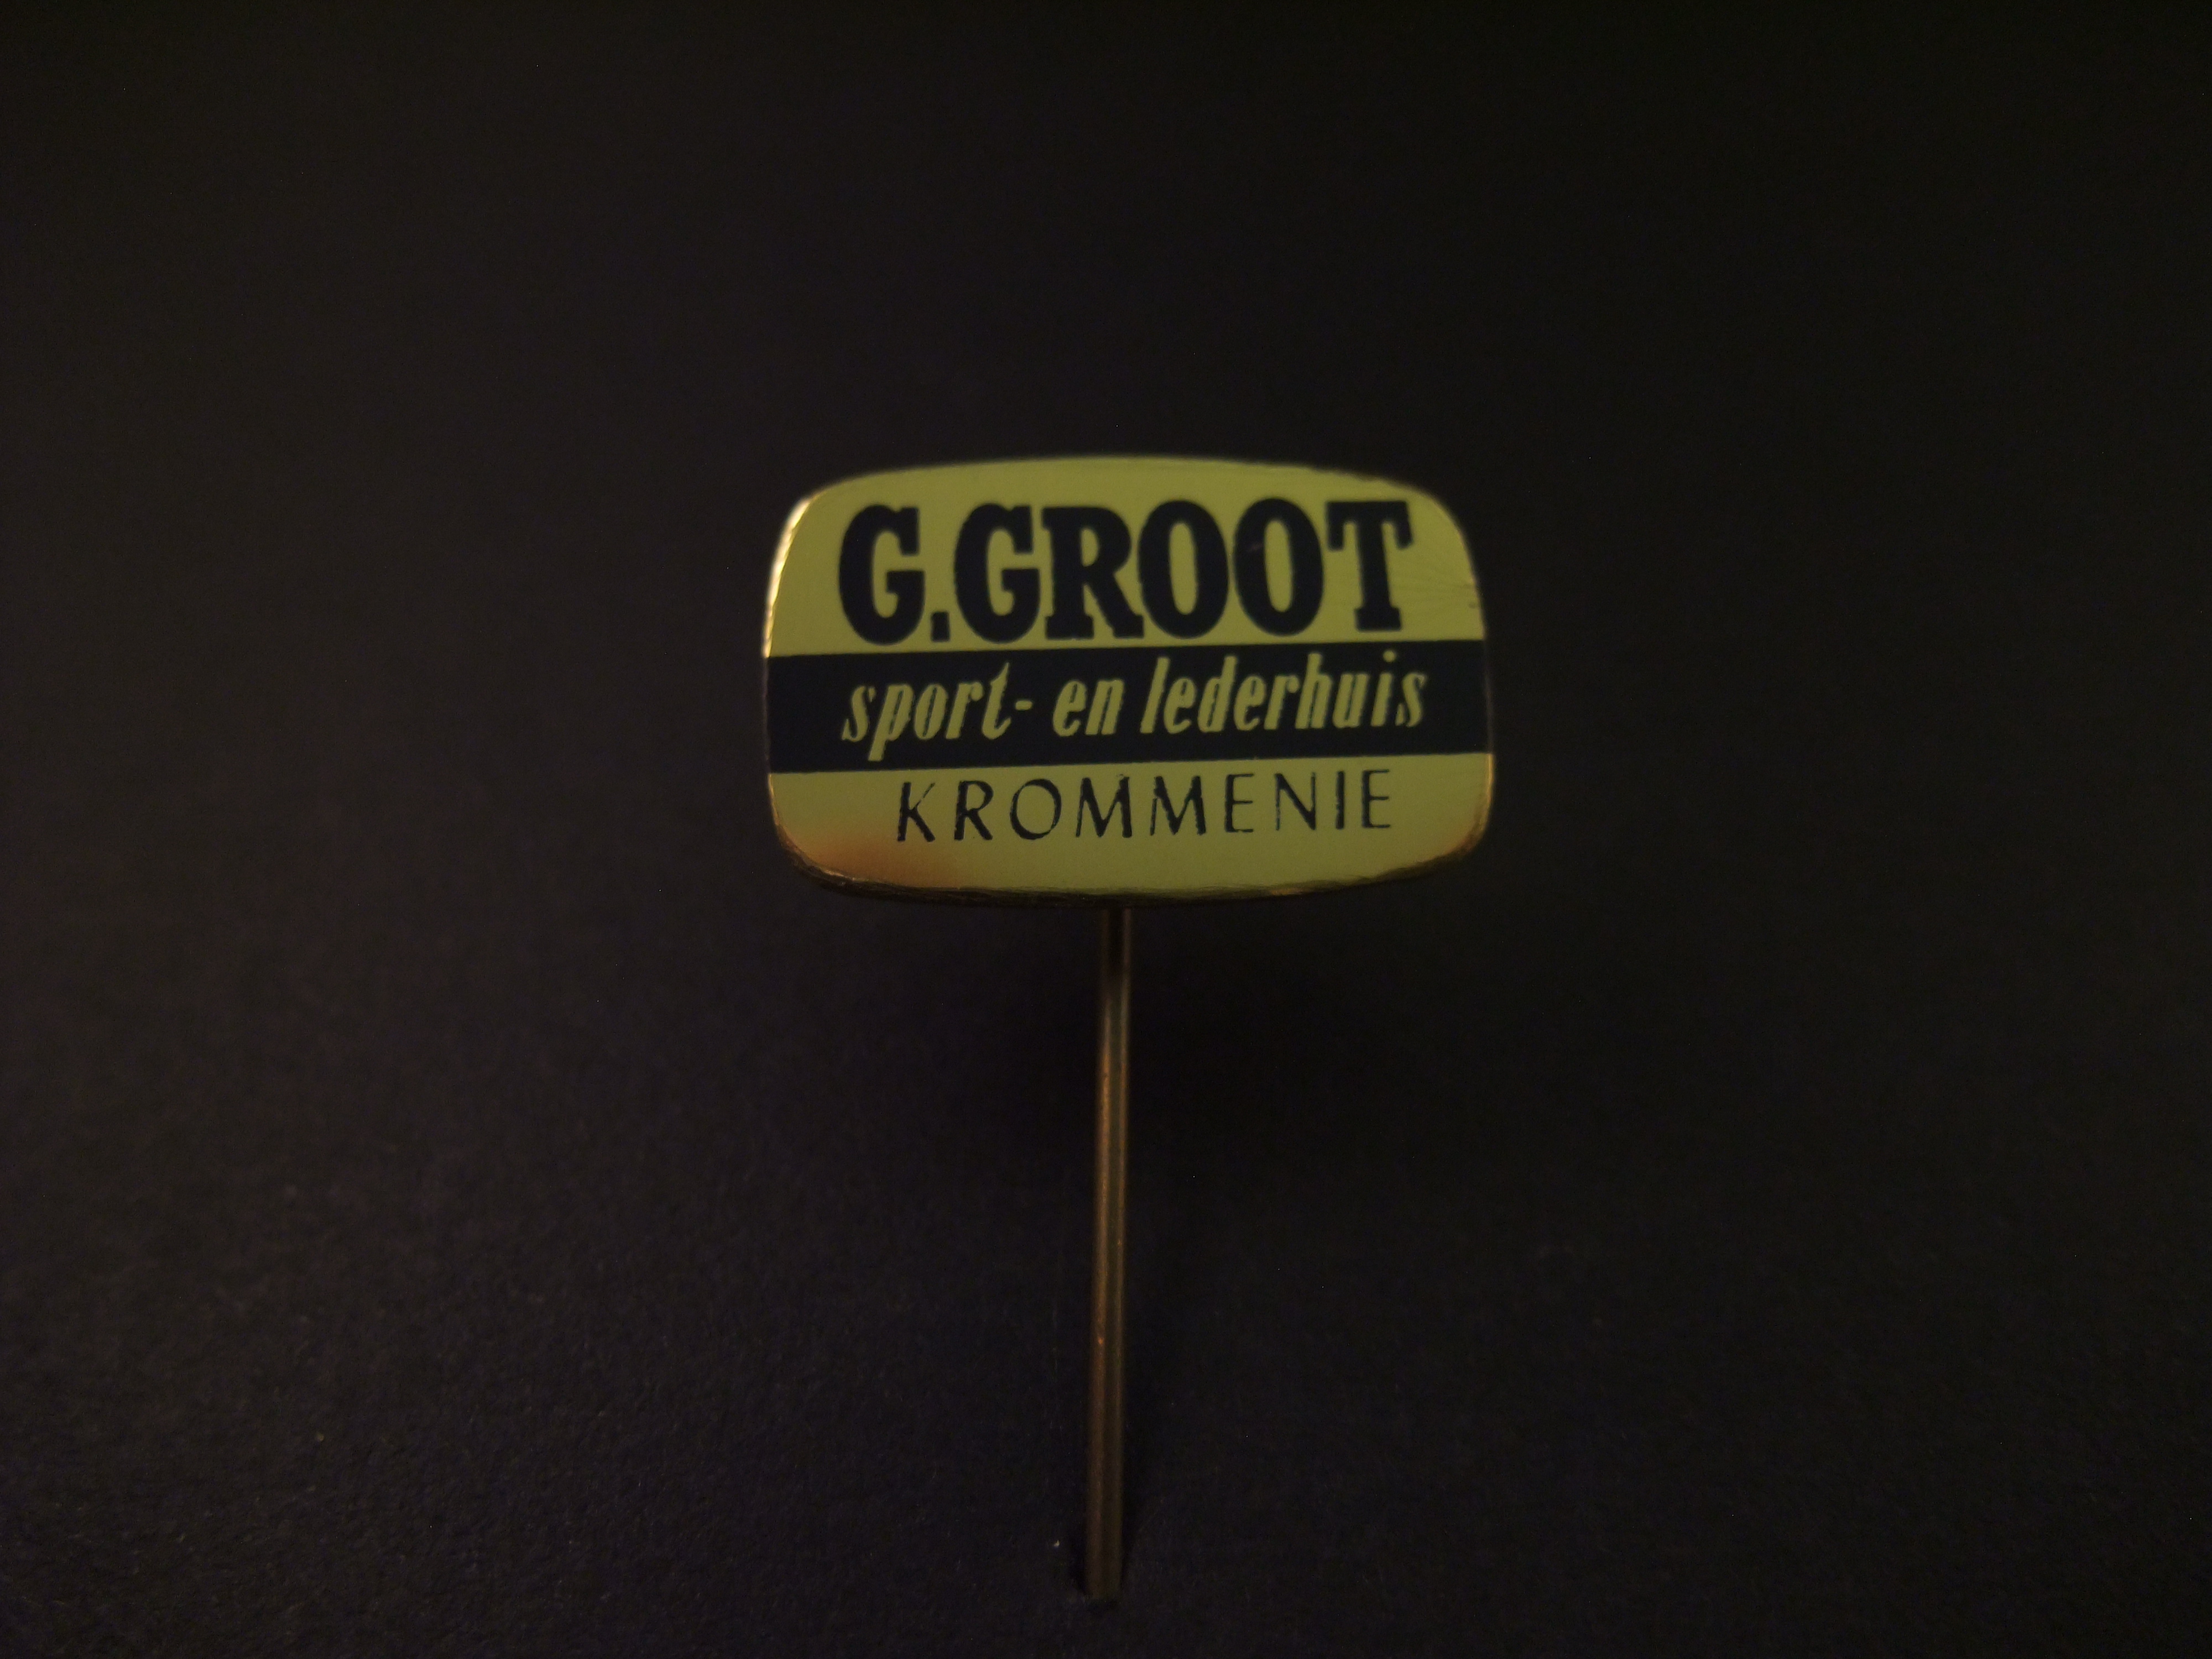 G. Groot sport- en lederhuis Krommenie ( gemeente Zaanstad)